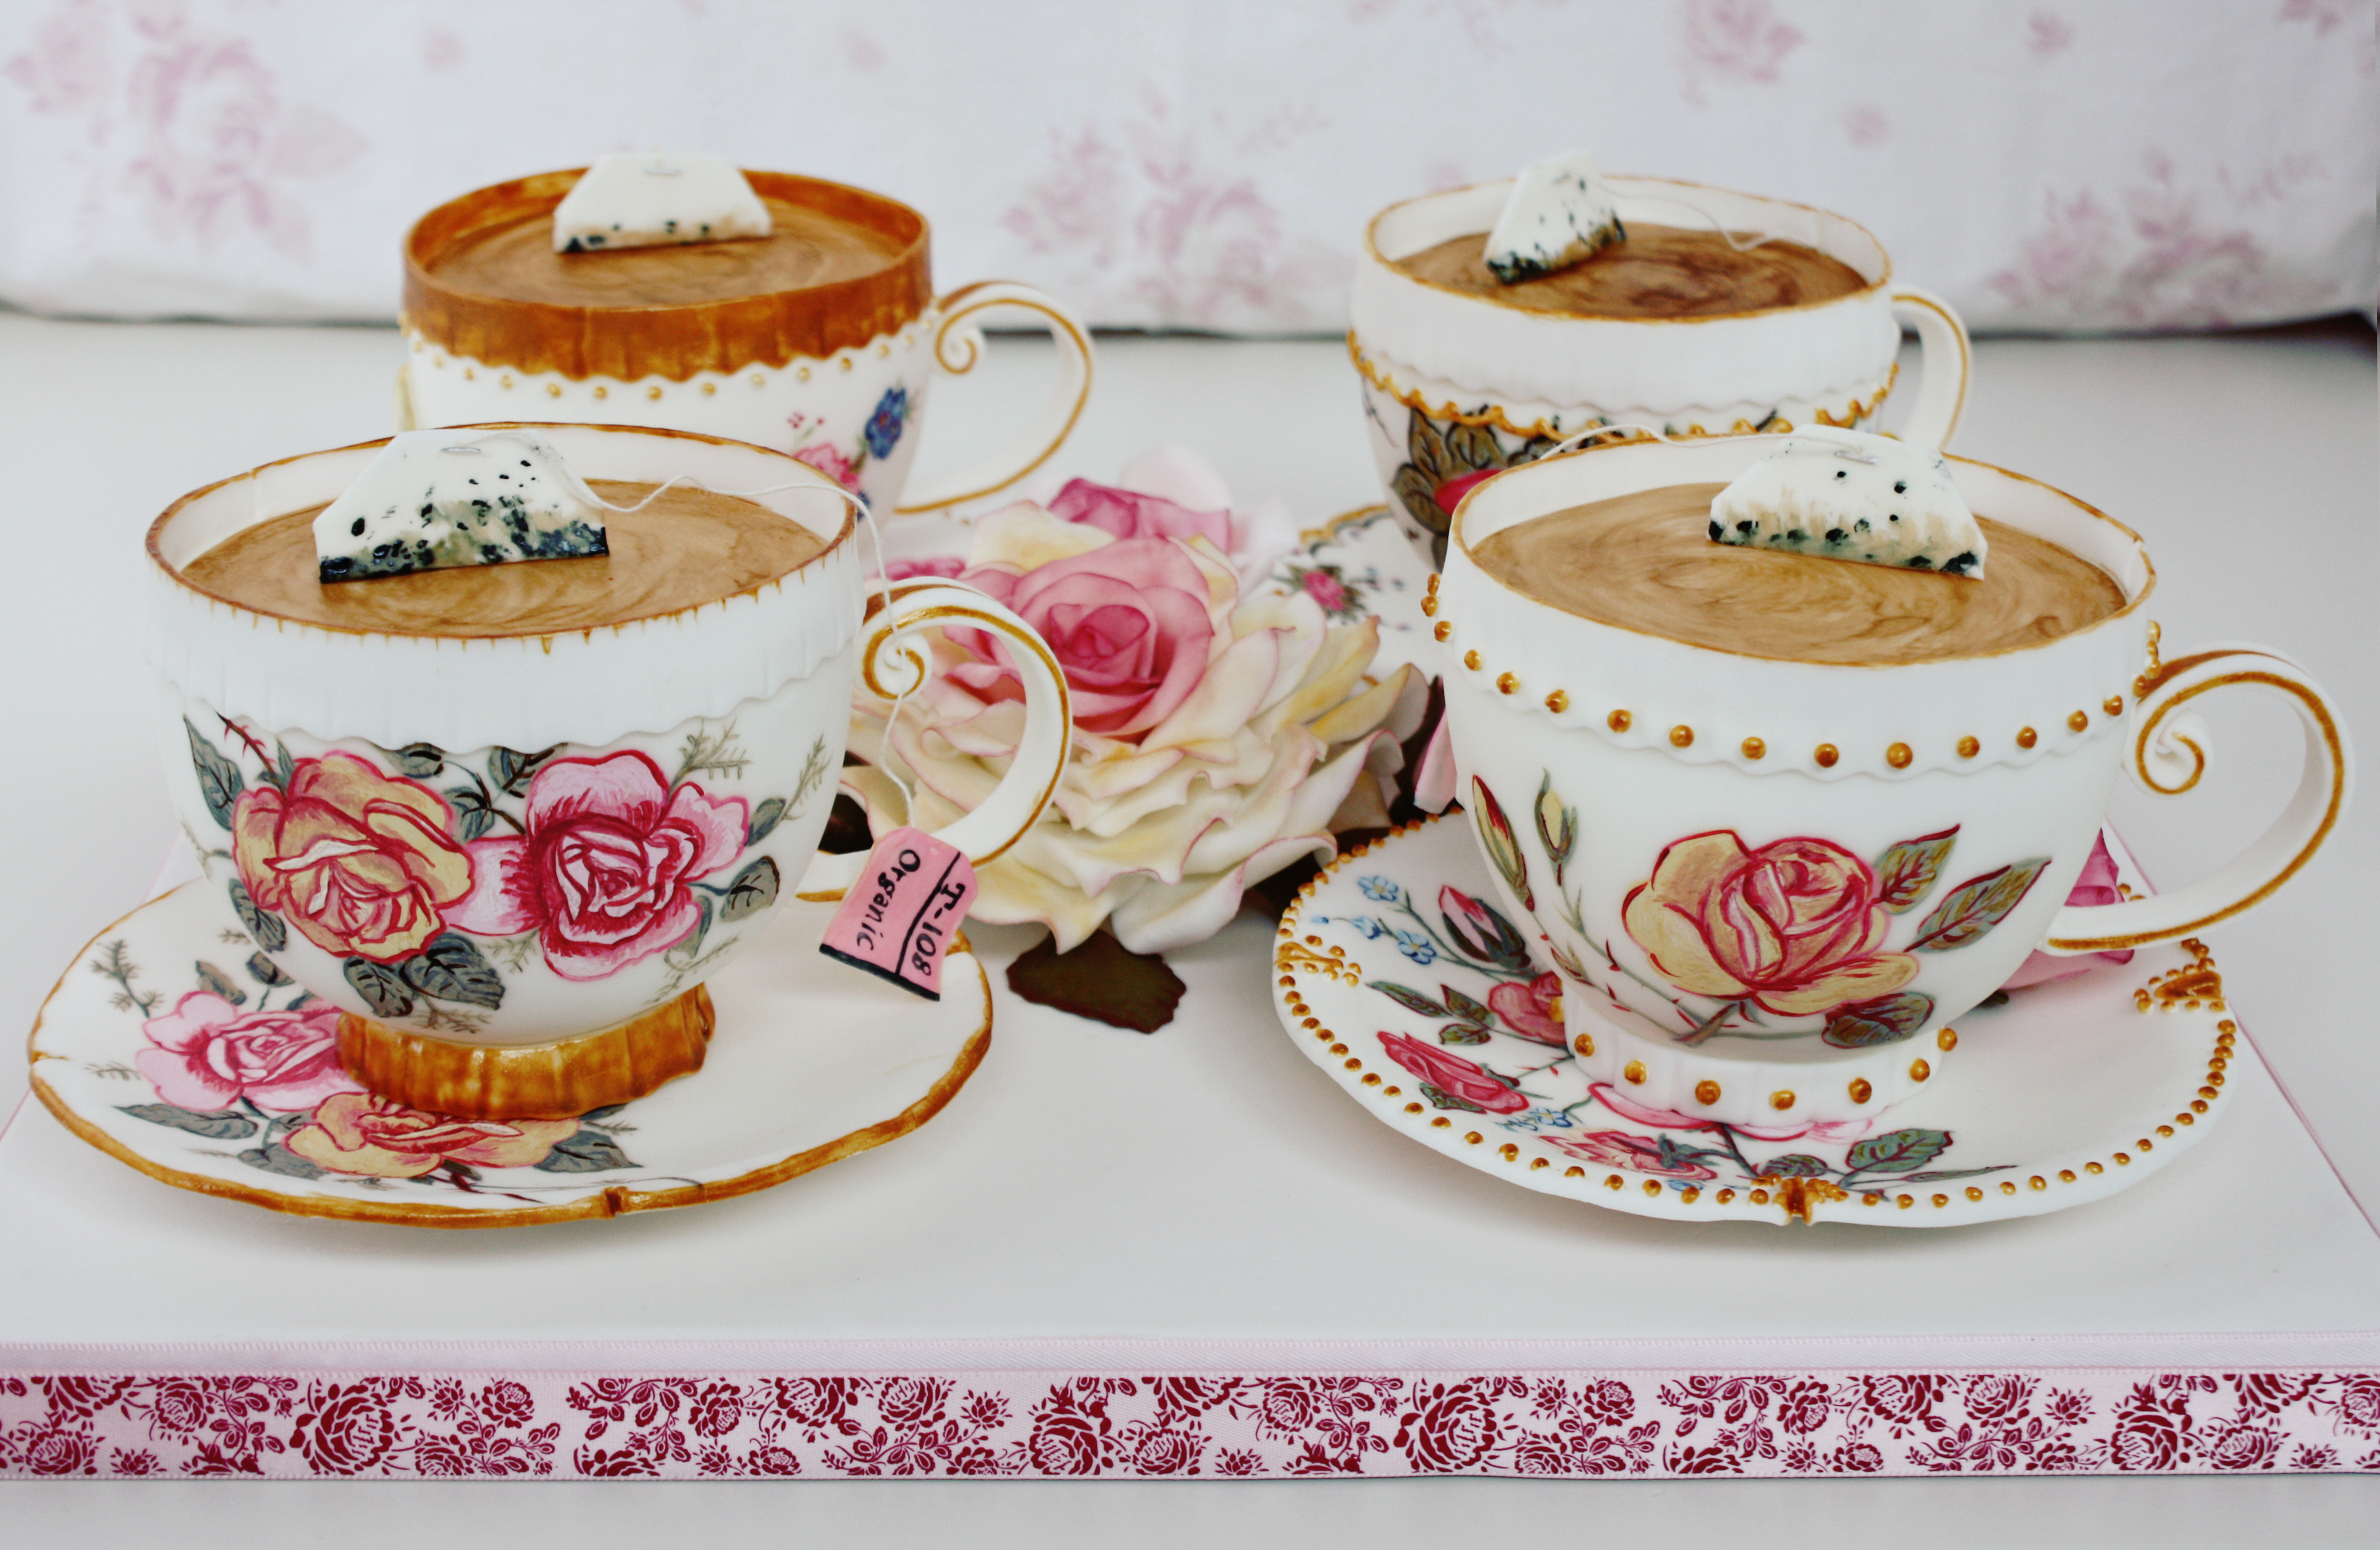 High Tea - Edible Tea Cups